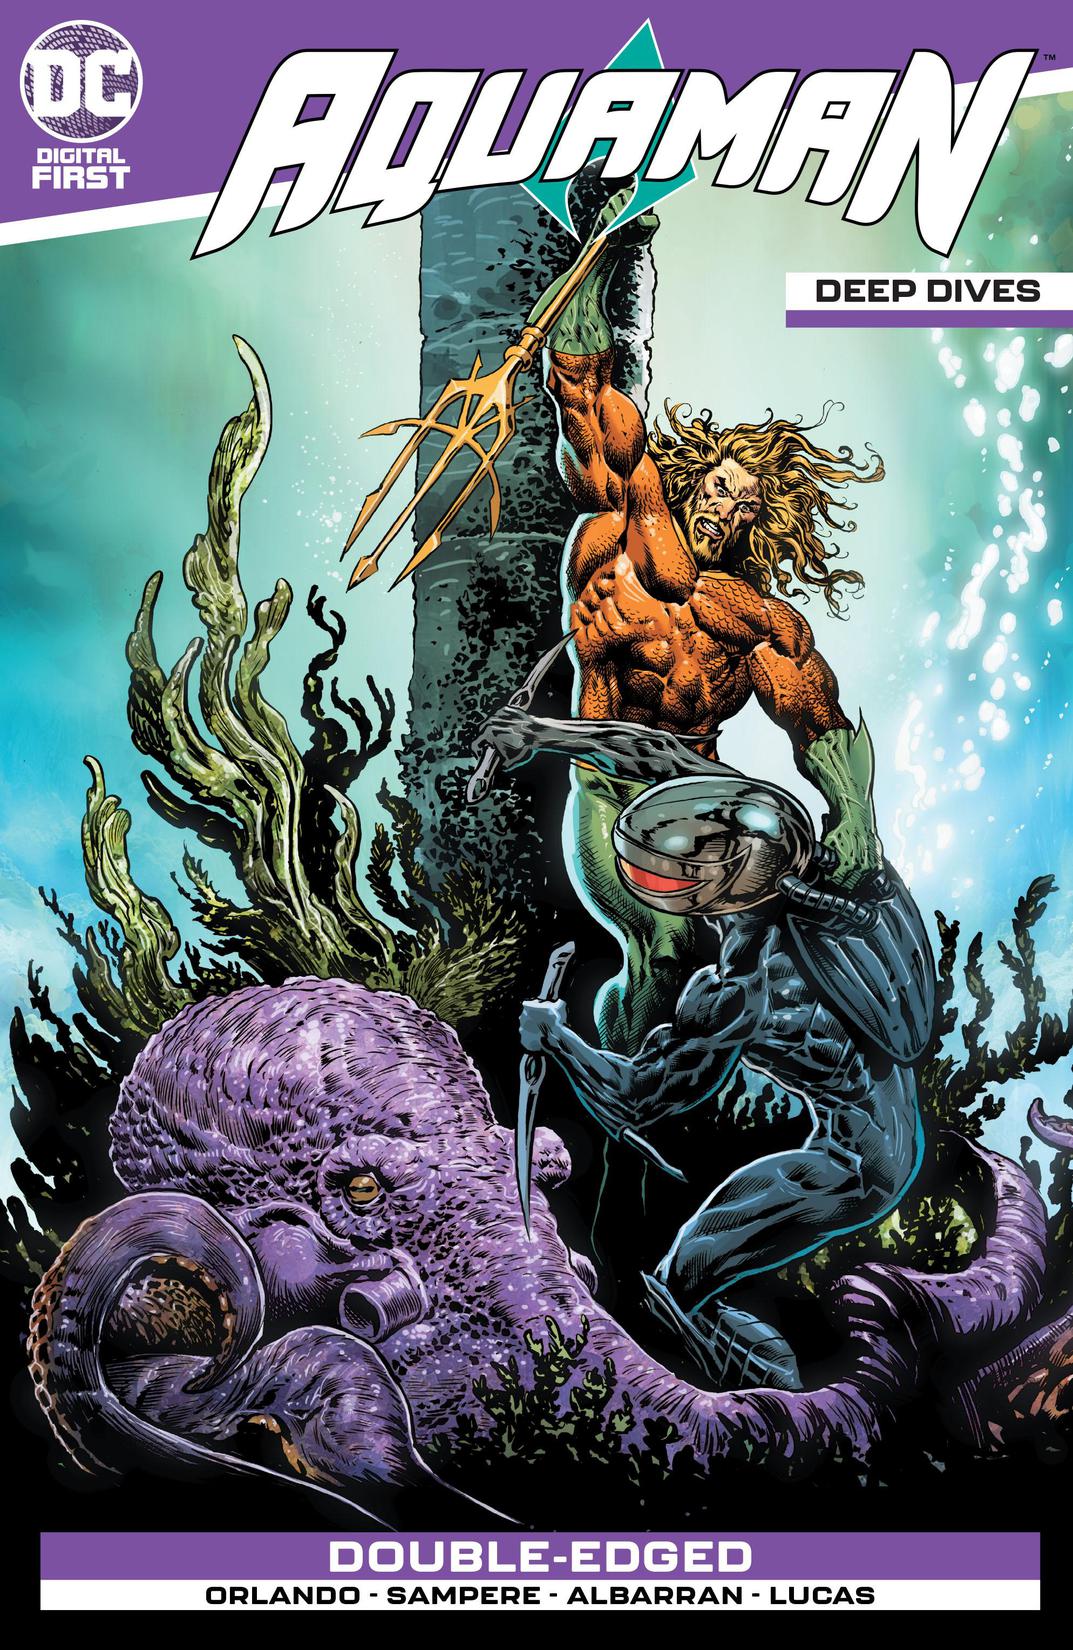 Aquaman: Deep Dives #1 preview images